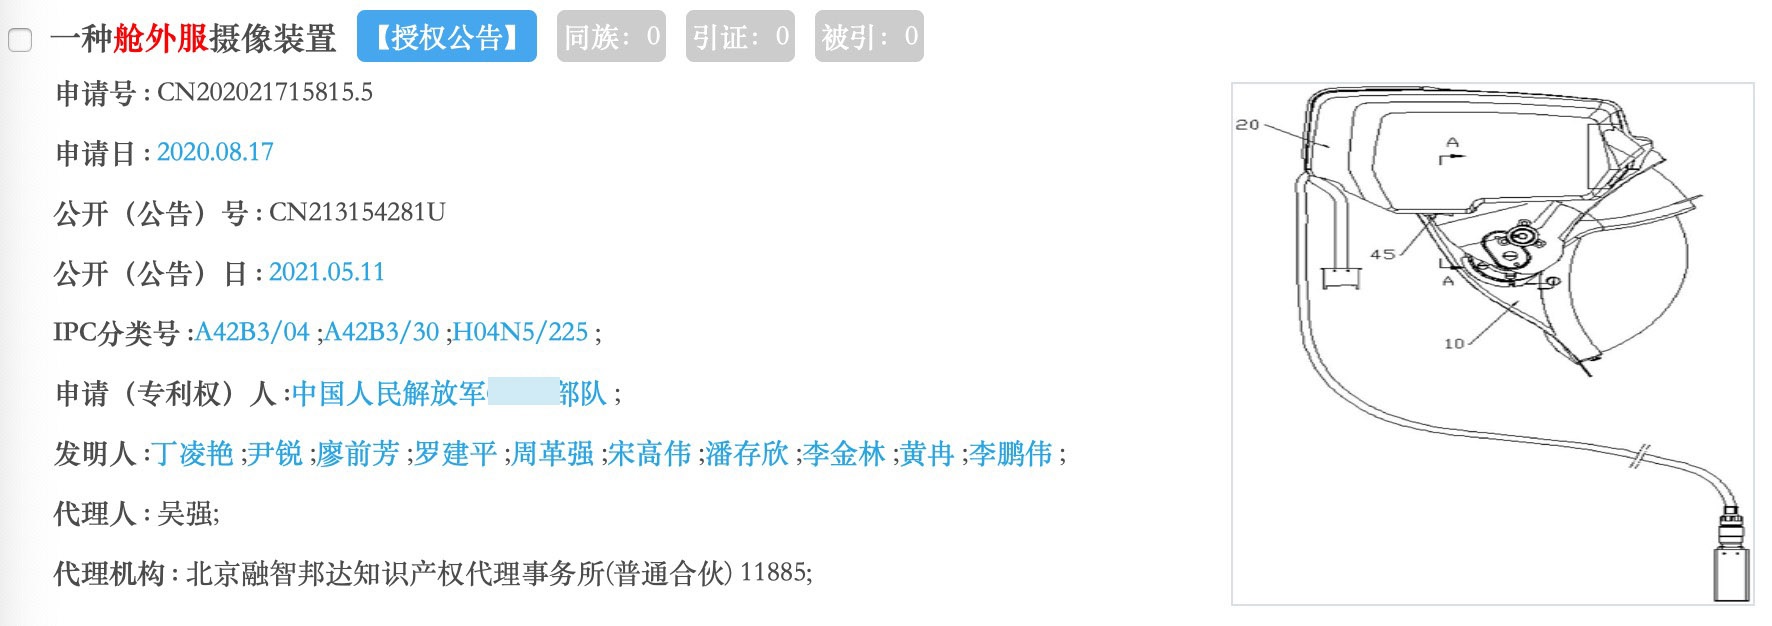 罗建平参与的舱外服专利  图片来源：中国知识产权局官网